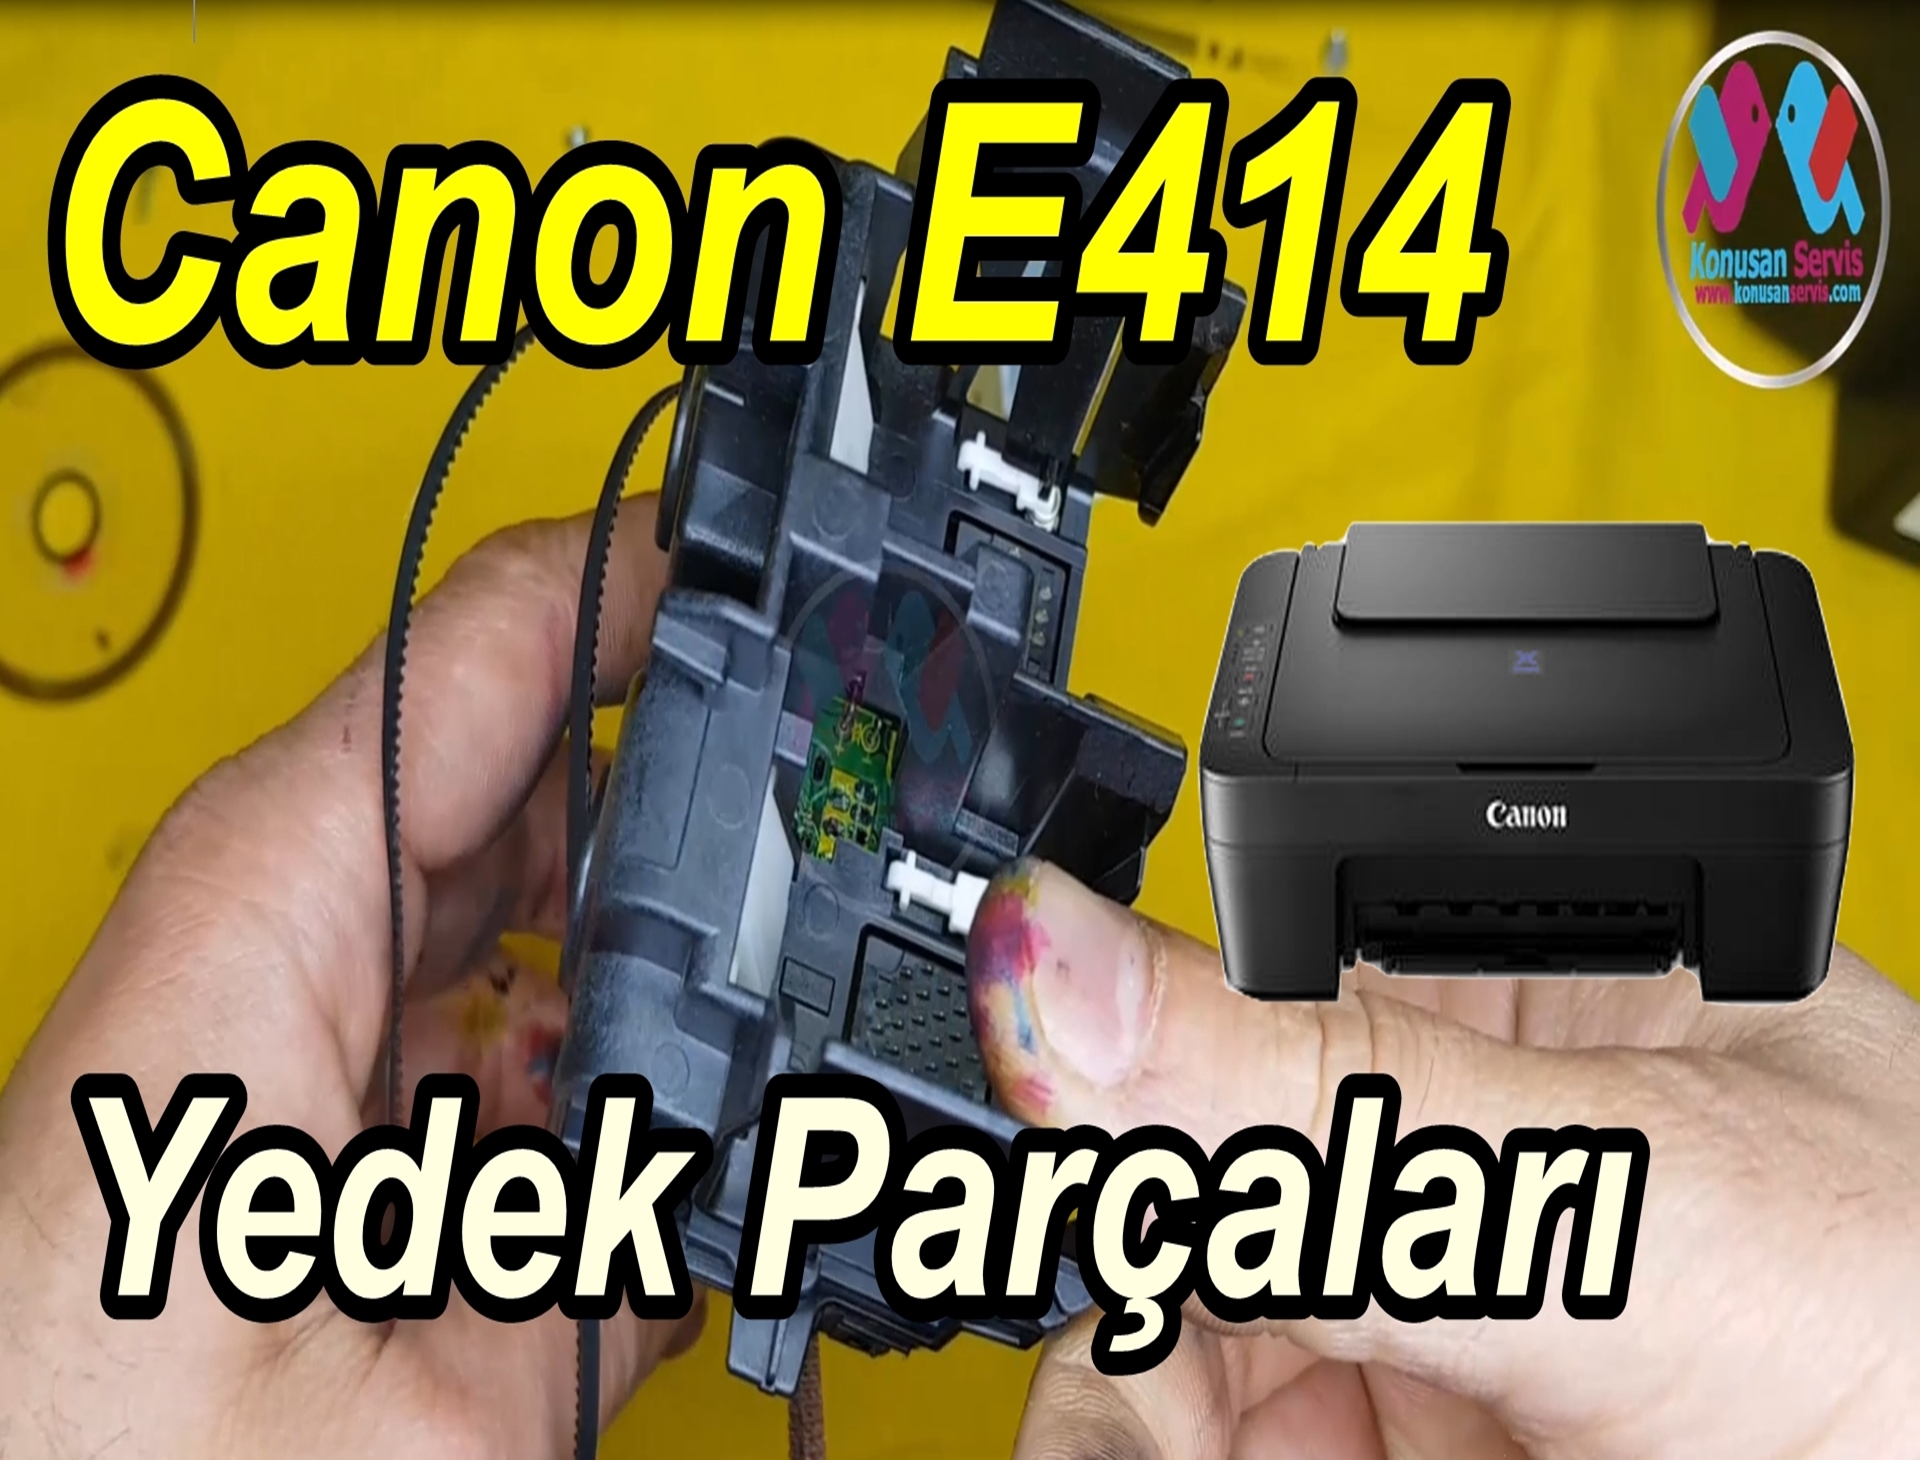 CANON PIXMA E414 | Canon Yazici Yedek Parçaları | KonuşanServis